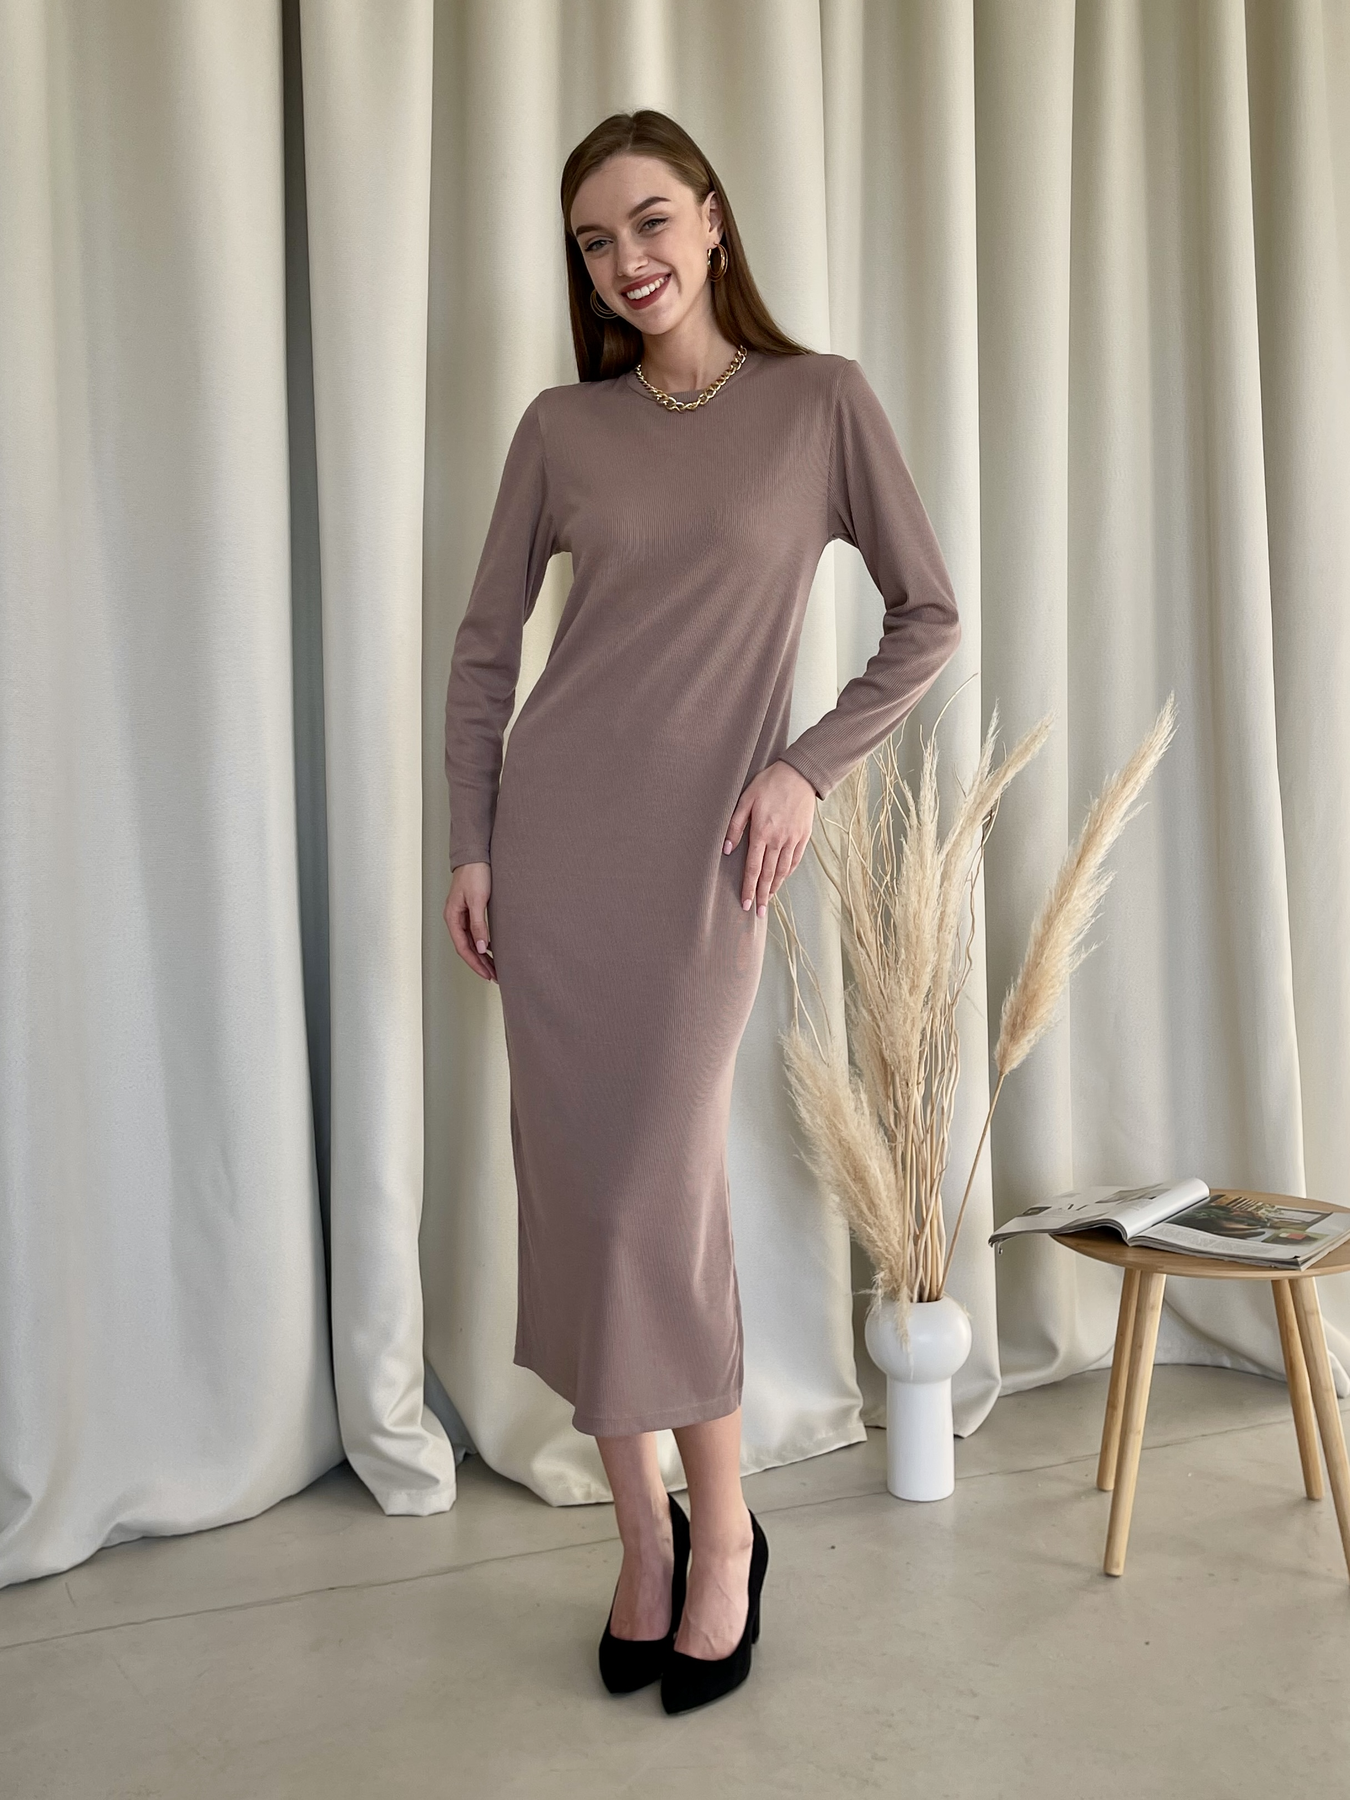 Купить Длинное платье бежевое в рубчик с длинным рукавом Merlini Кондо 700001164, размер 42-44 (S-M) в интернет-магазине